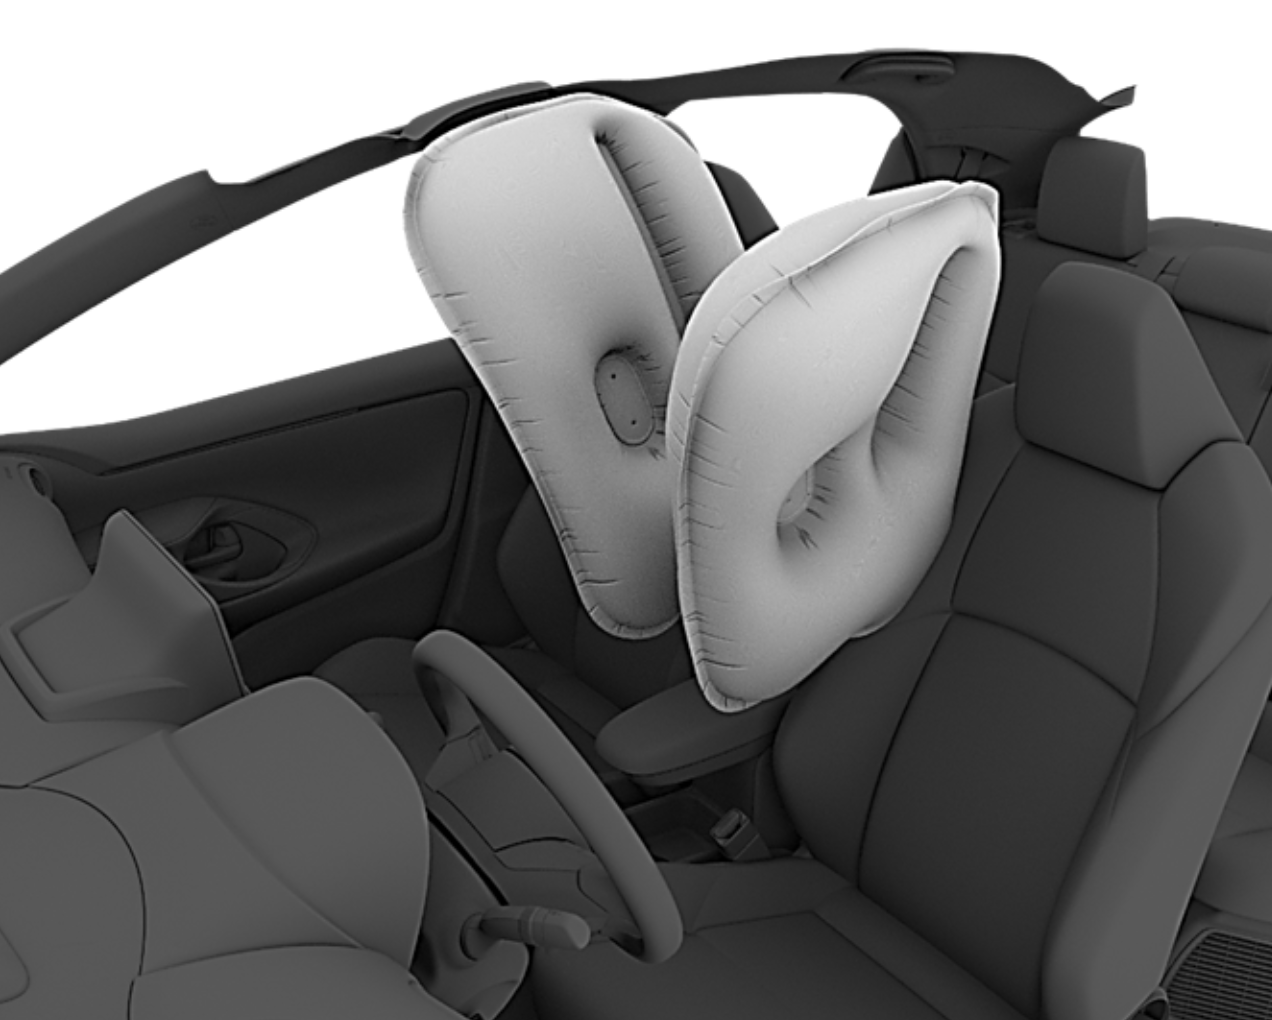 Toyota recibe el premio SAFETYBEST 2020 por el innovador airbag central del nuevo Toyota Yaris Electric Hybrid.